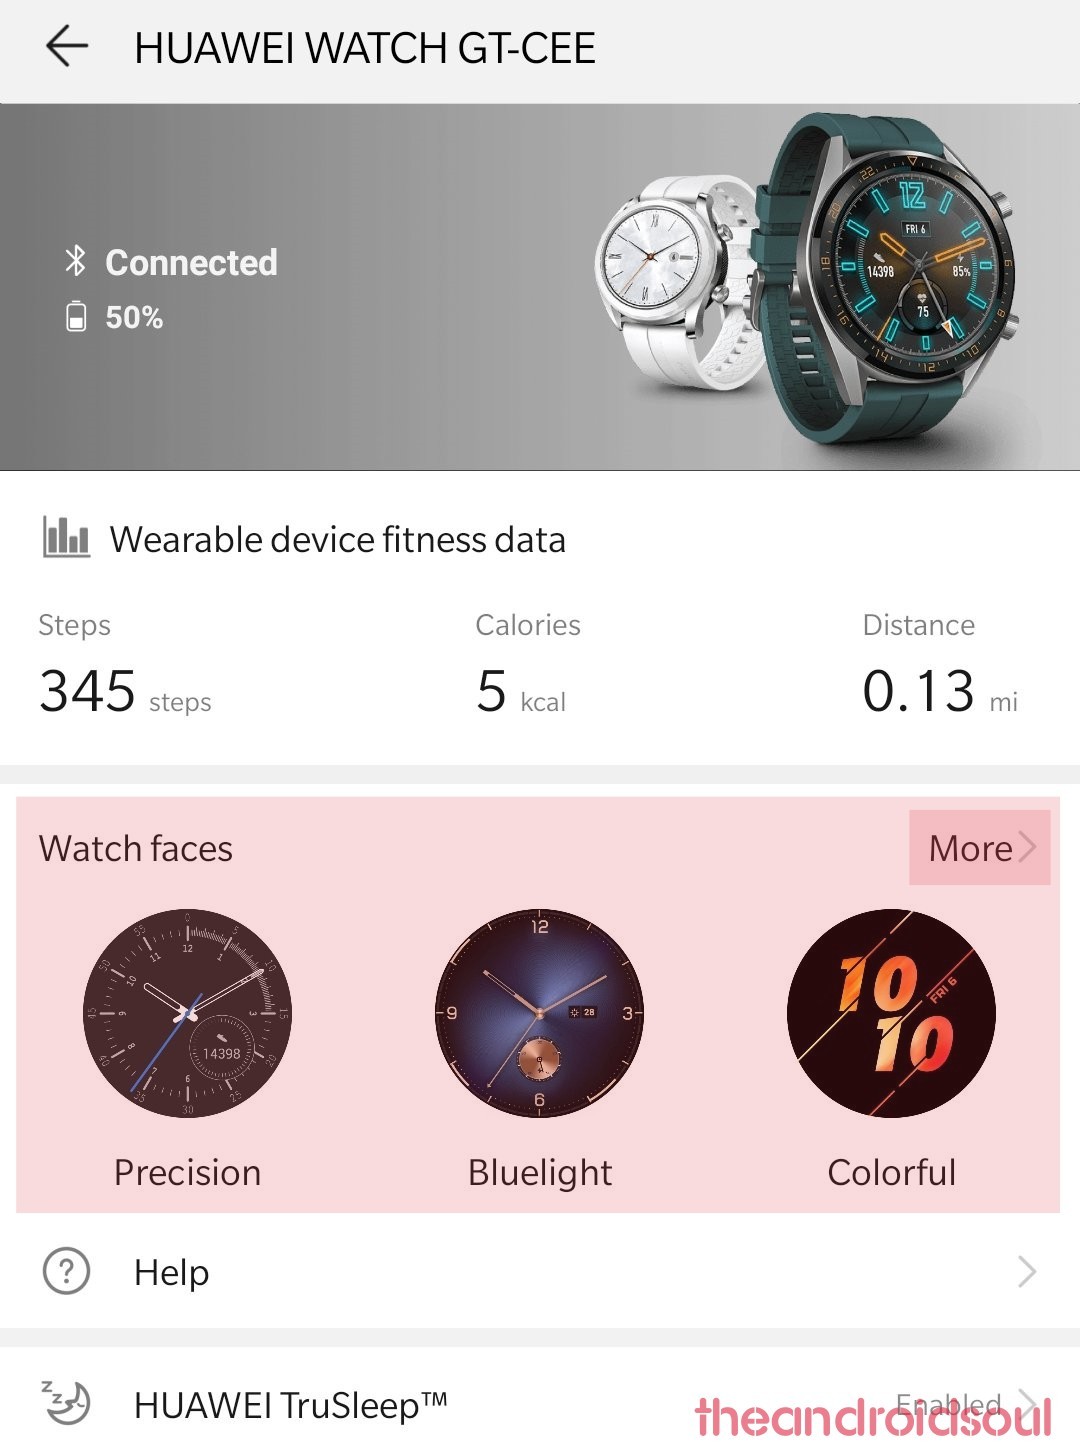 Русские циферблаты для умных часов Huawei Watch GT2 и Honor